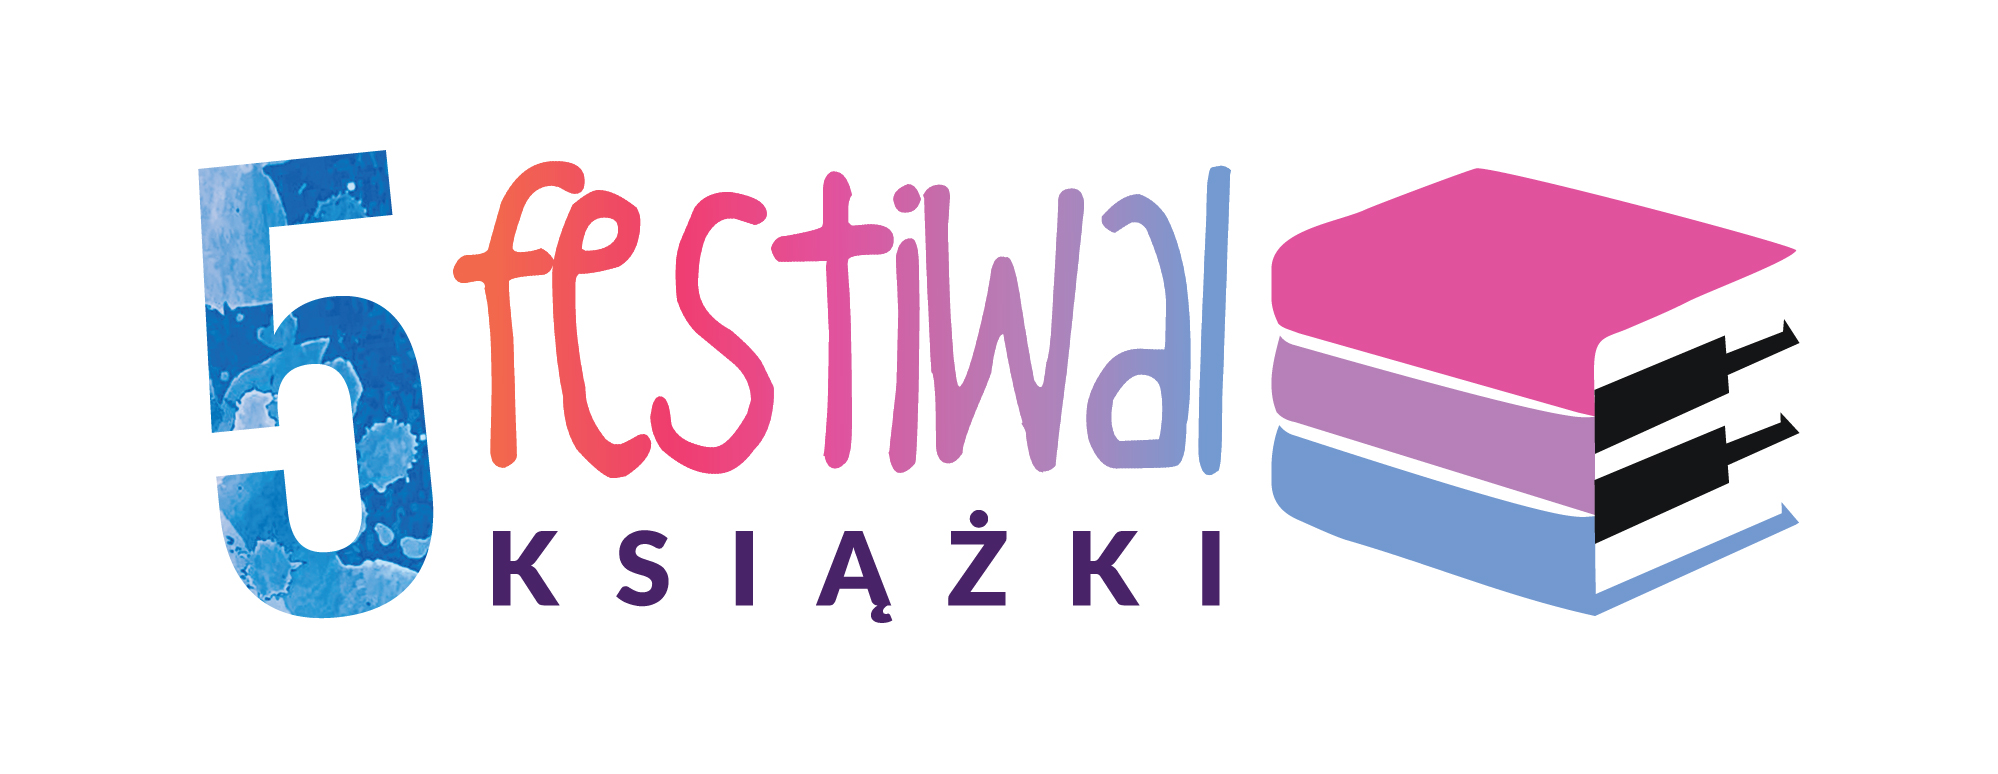 logo 5 festiwal